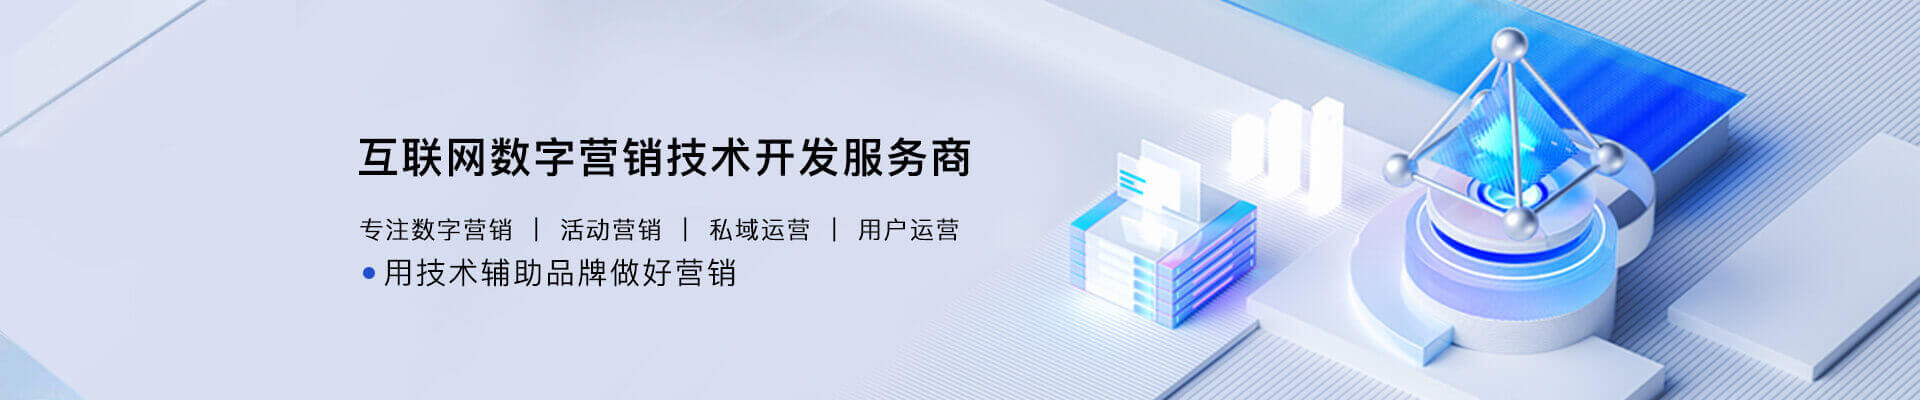 广州小程序开发公司